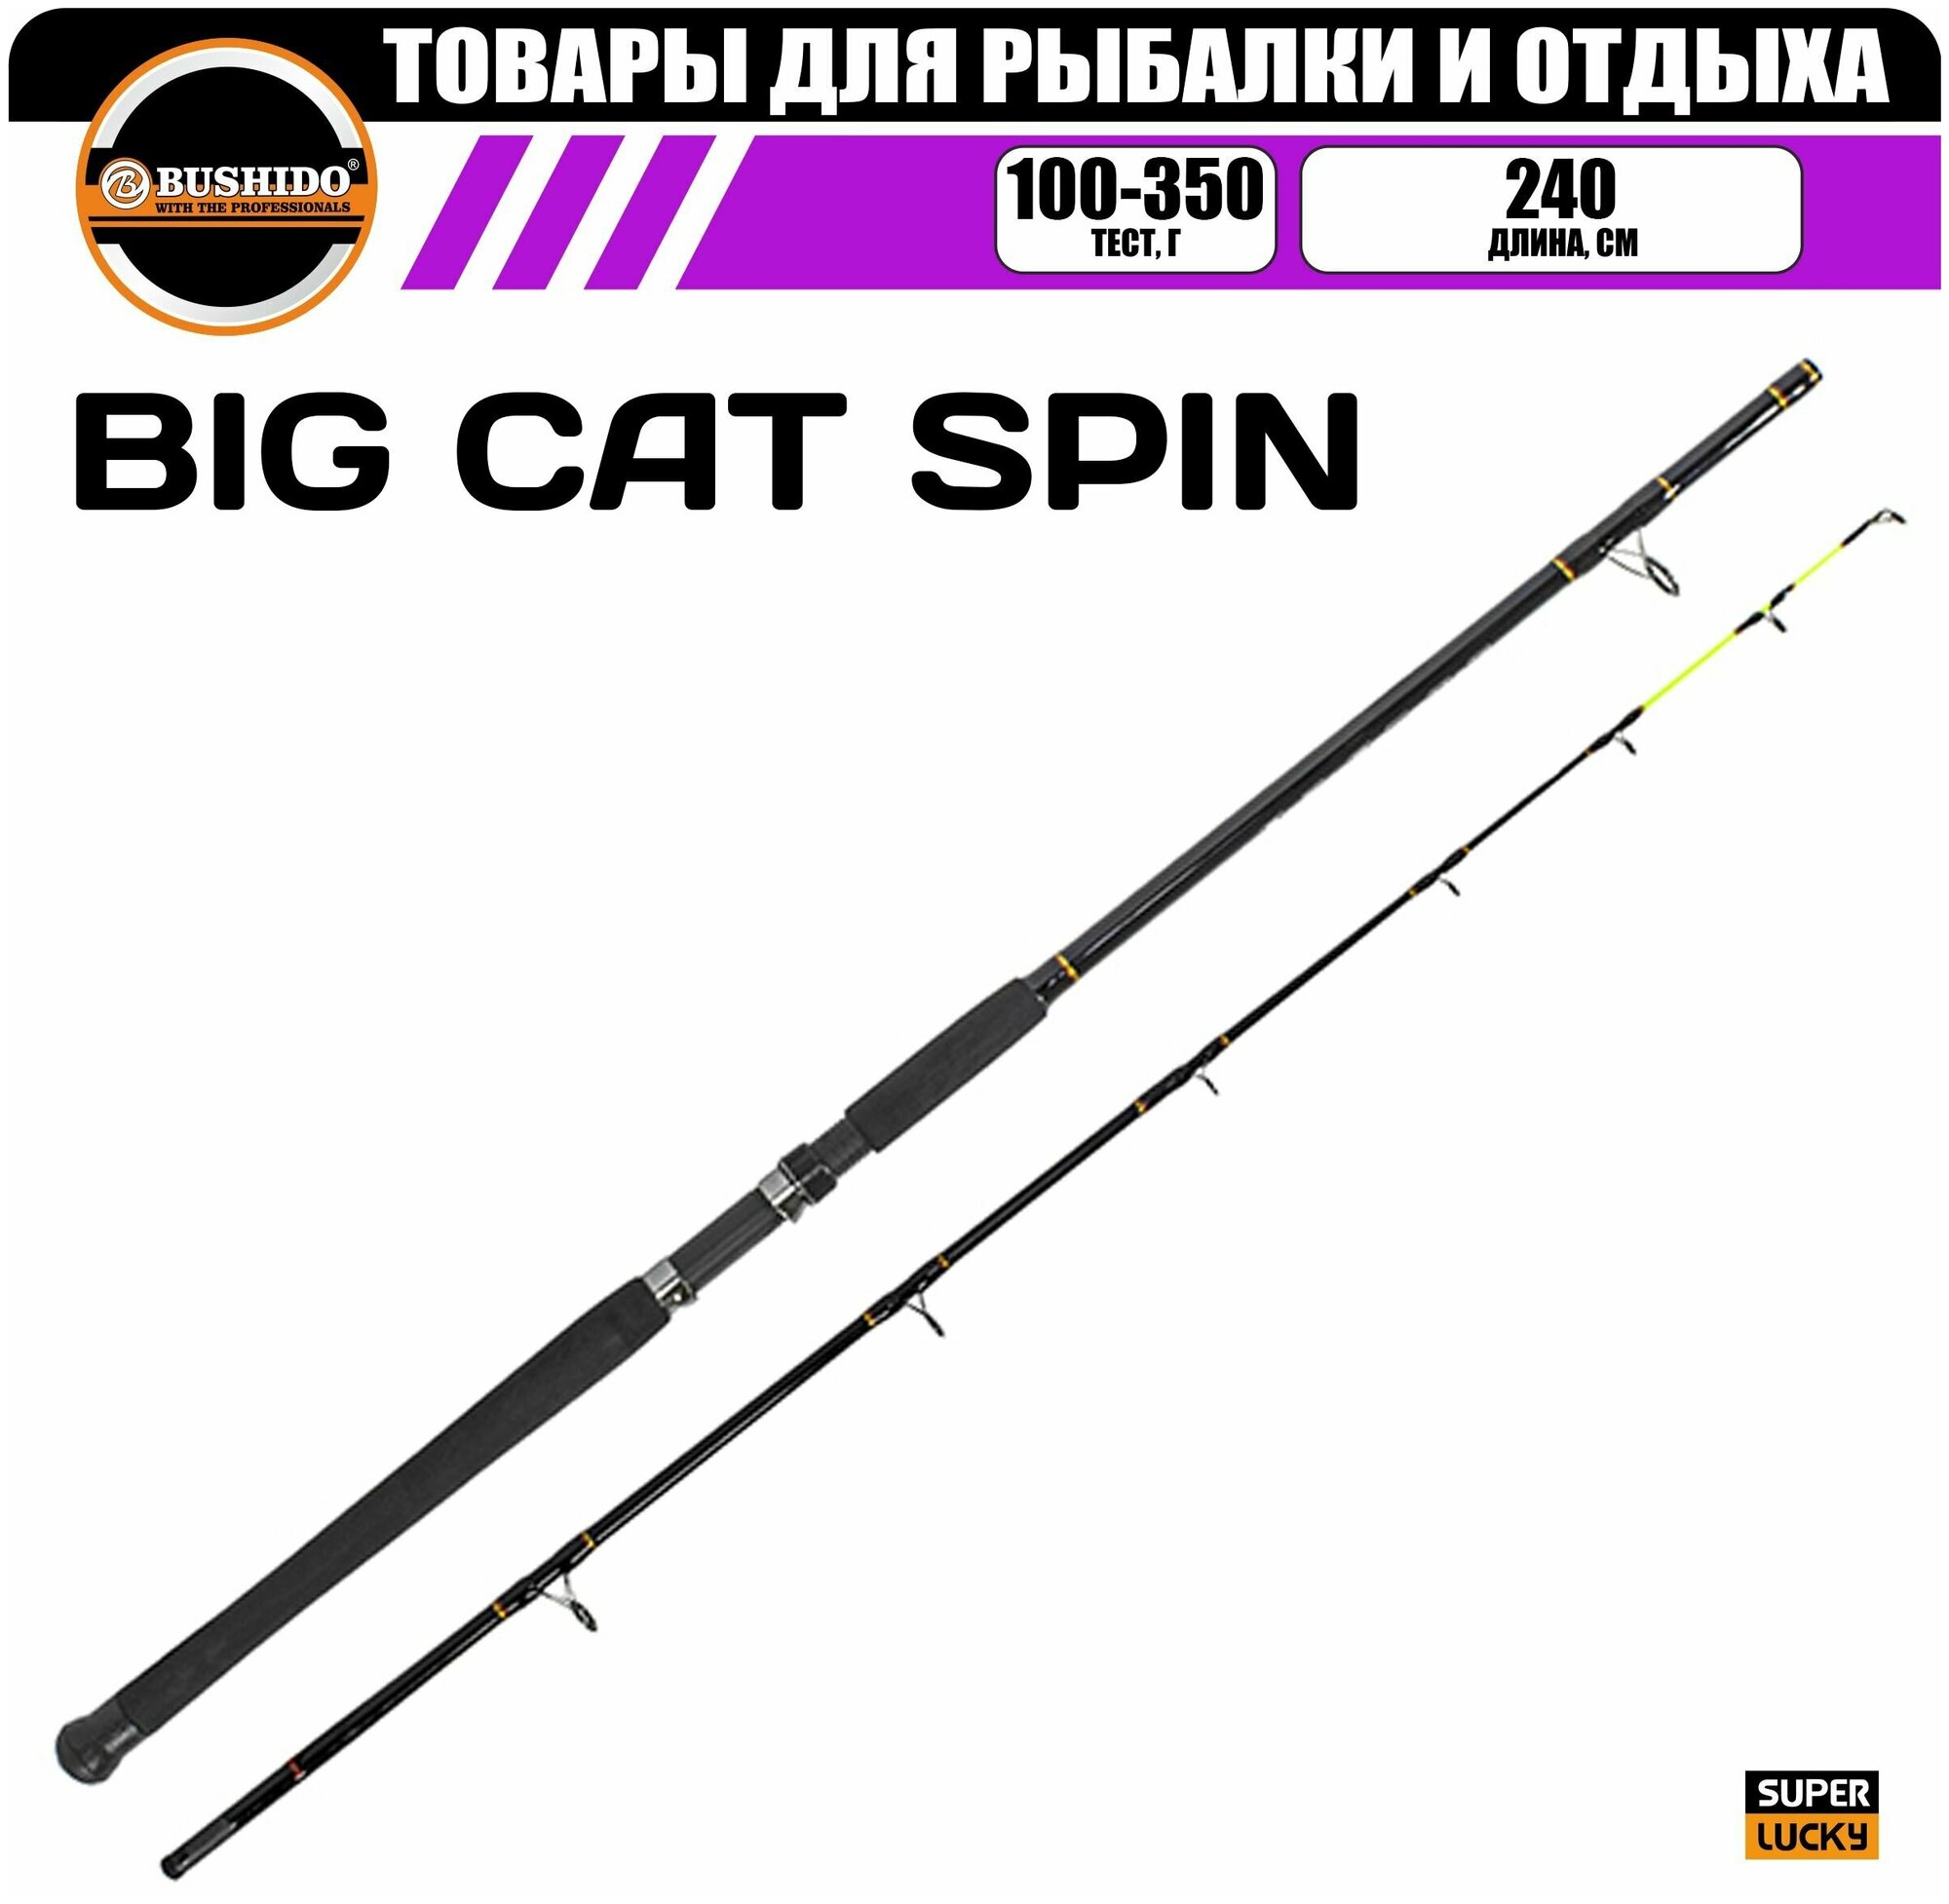 Спиннинг BUSHIDO BIG CAT 2.40м (100-350гр), материал - fiberglass, штекерная конструкция, для рыбалки, быстрый (fast) строй, вклеенная монолитная (solid tip) вершинка